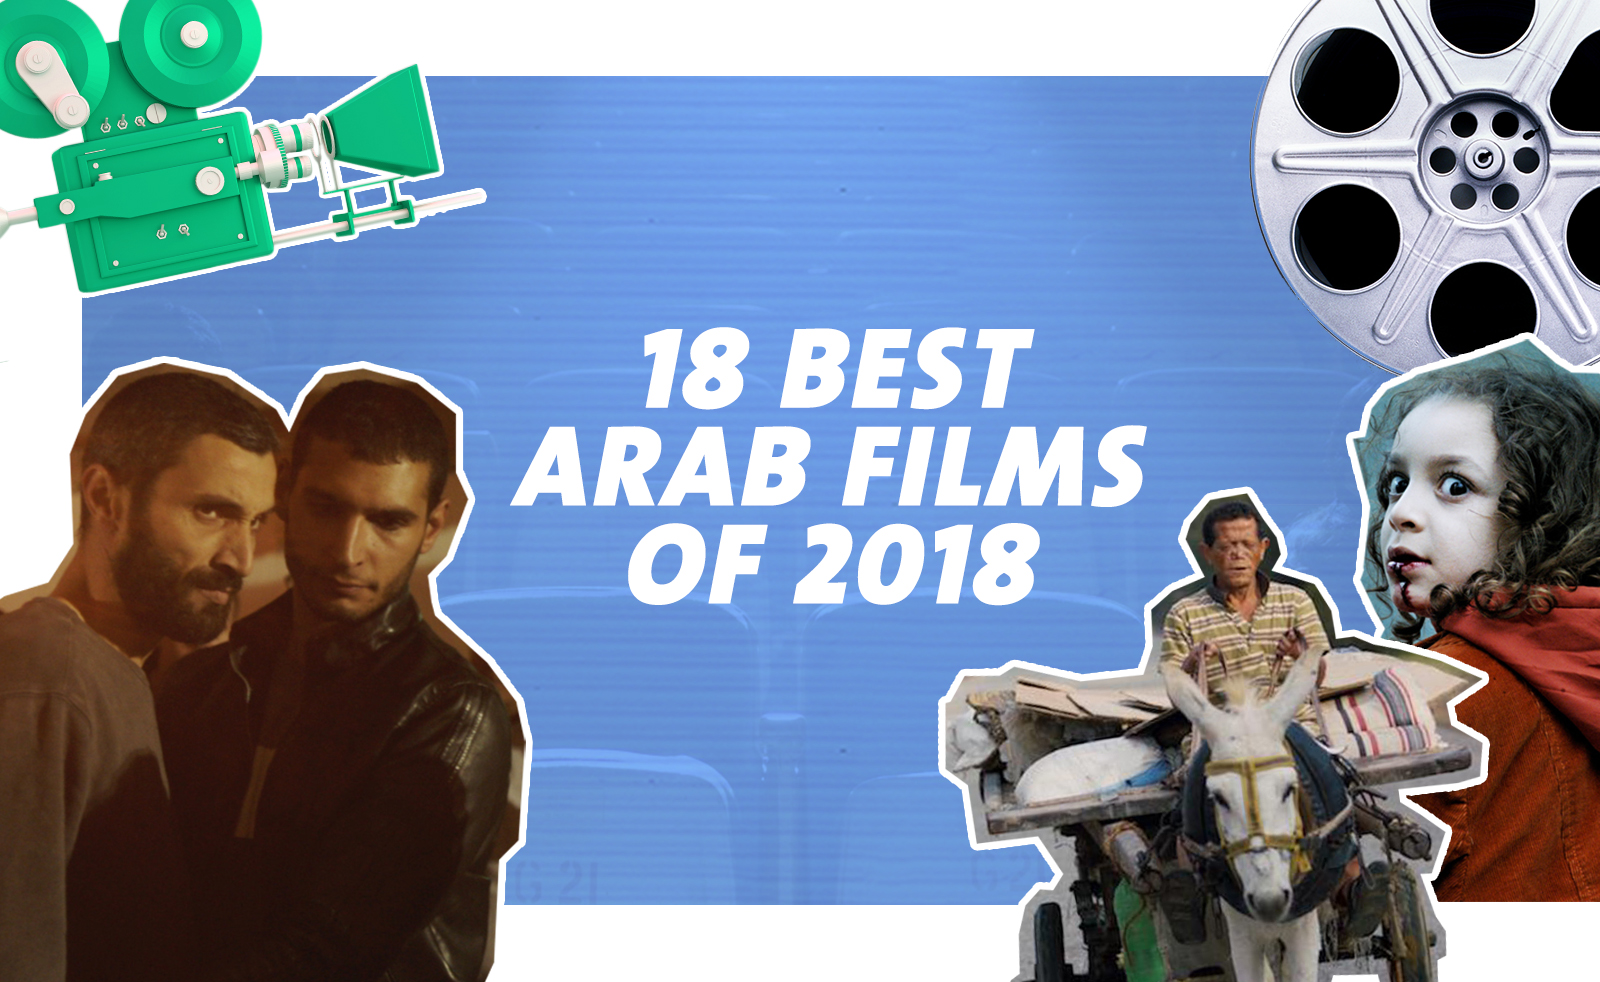 CairoScene’s Picks for the Best 18 Arab Films in 2018